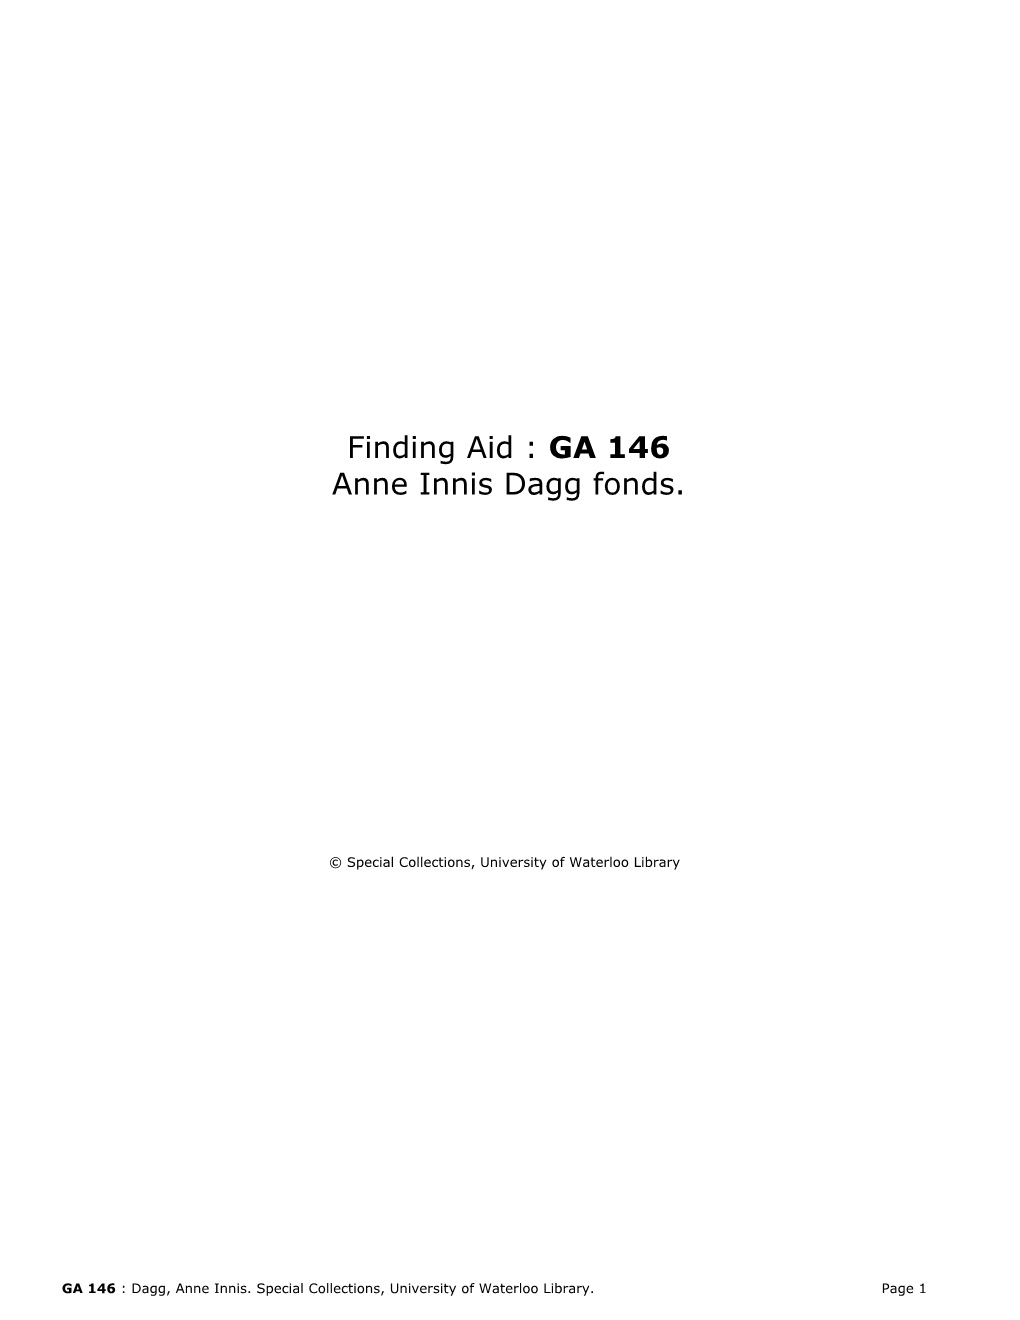 Inmagic DB/Textworks Report